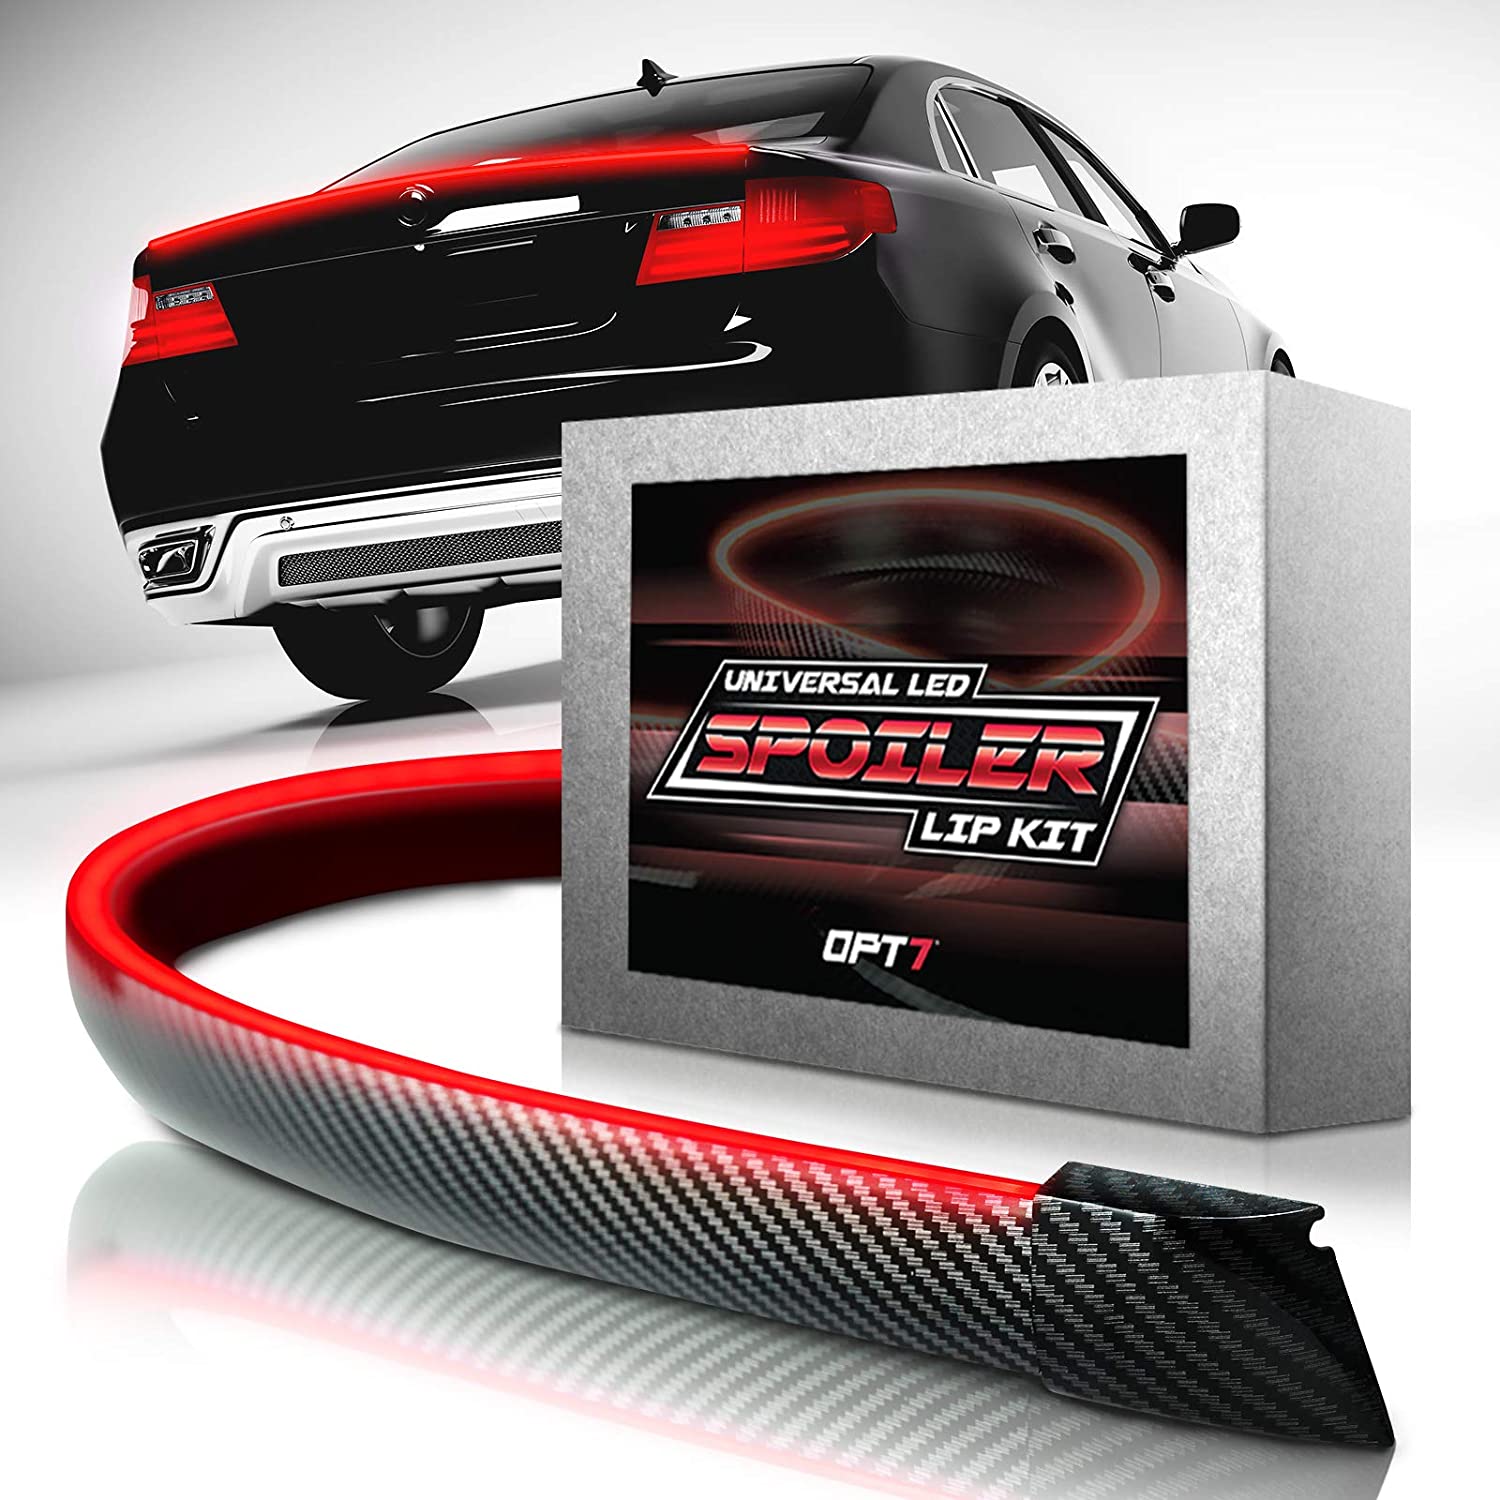 OPT7 Universal LED Spoiler Rear Spoiler Lip Kit (3.9ft) for Car Trunk